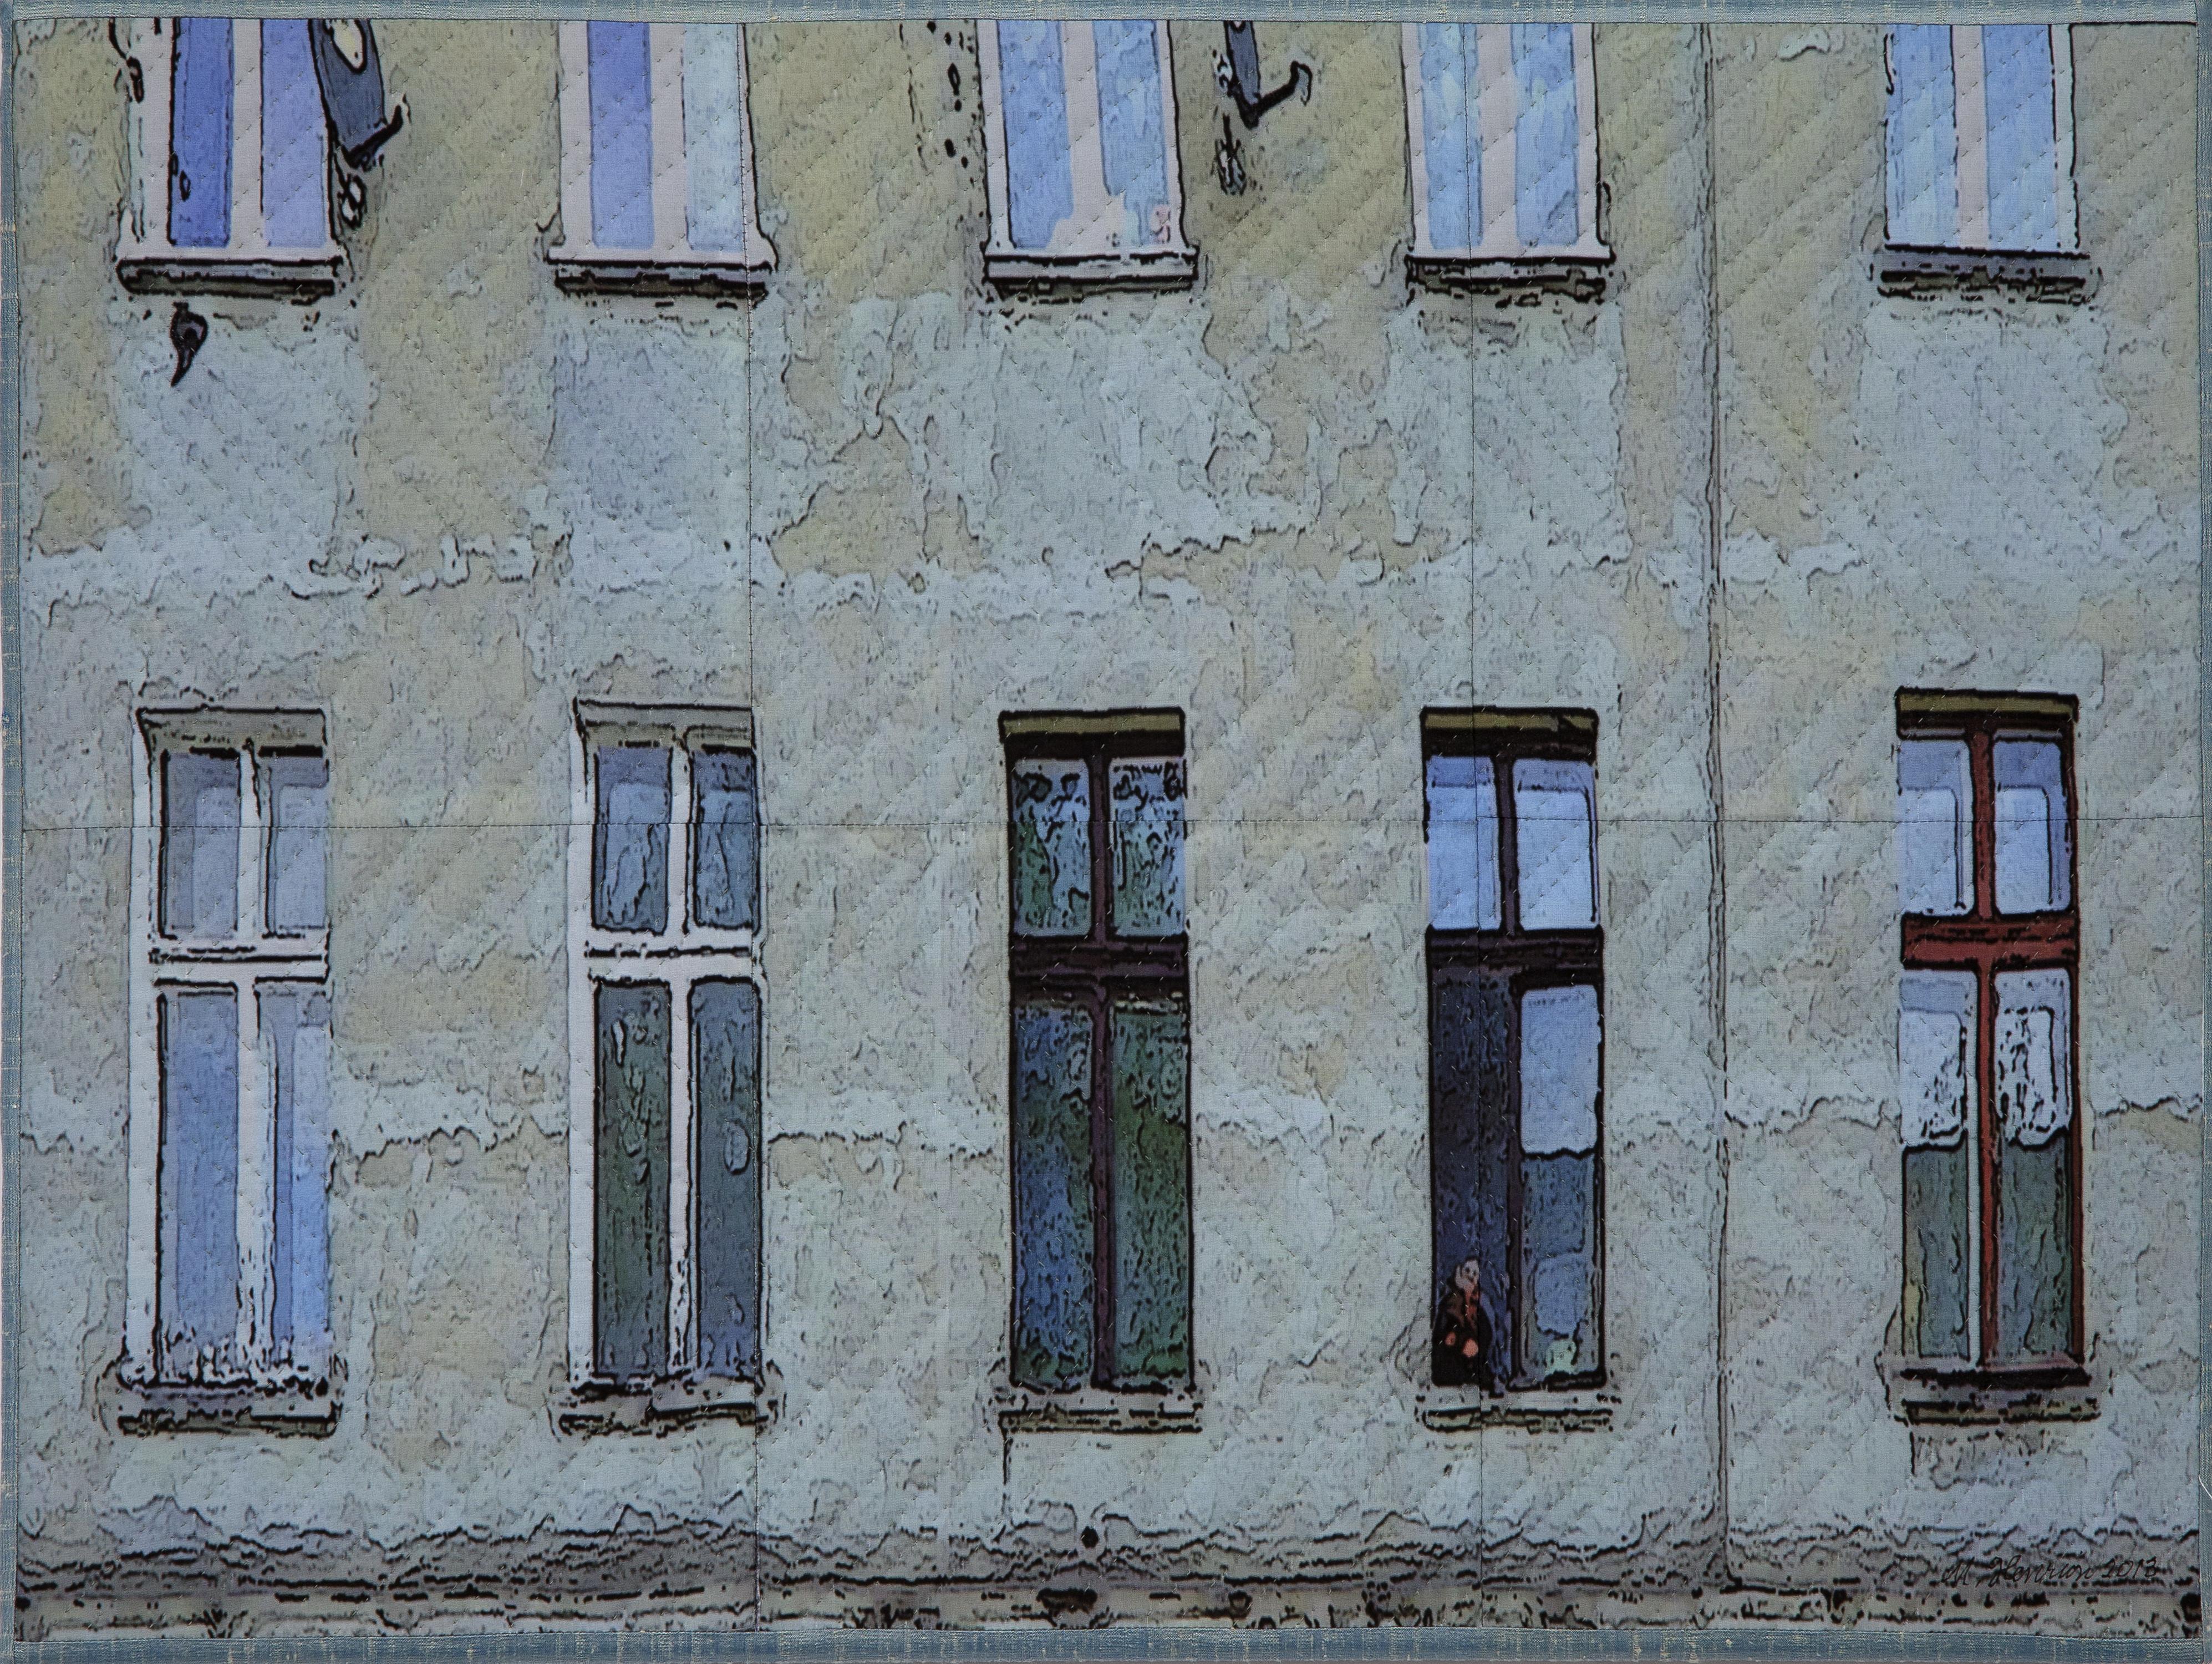 Lodz Windows 1319, Mischtechnik auf Leinwand – Mixed Media Art von Marilyn Henrion